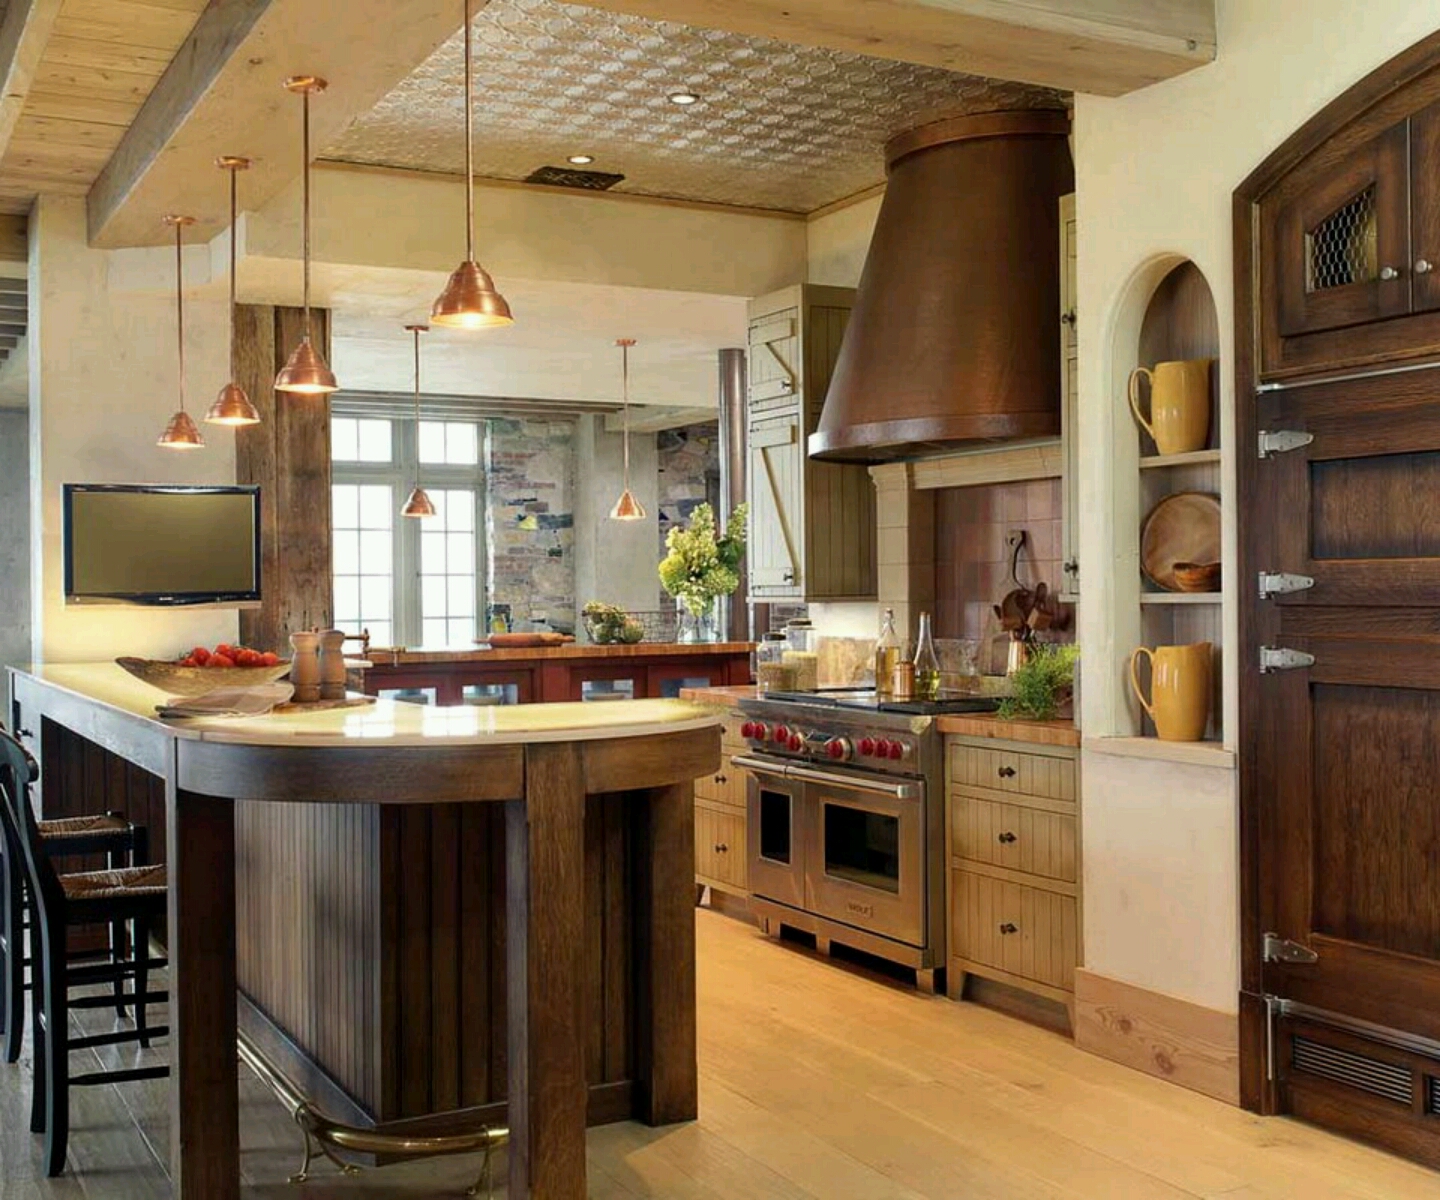 Modern home kitchen cabinet designs ideas.  New home designs